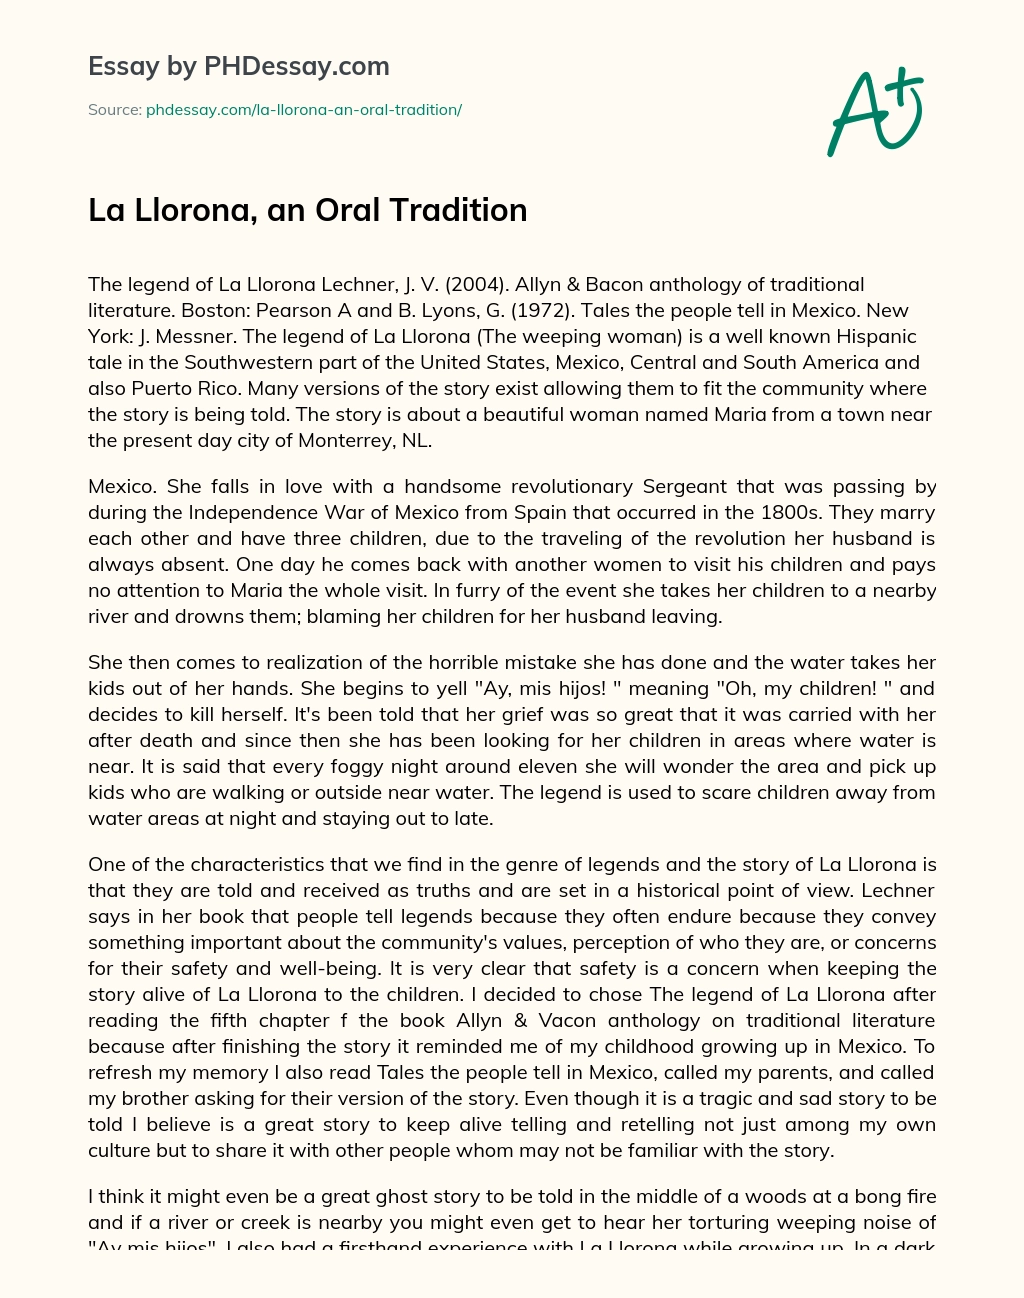 La Llorona, an Oral Tradition essay